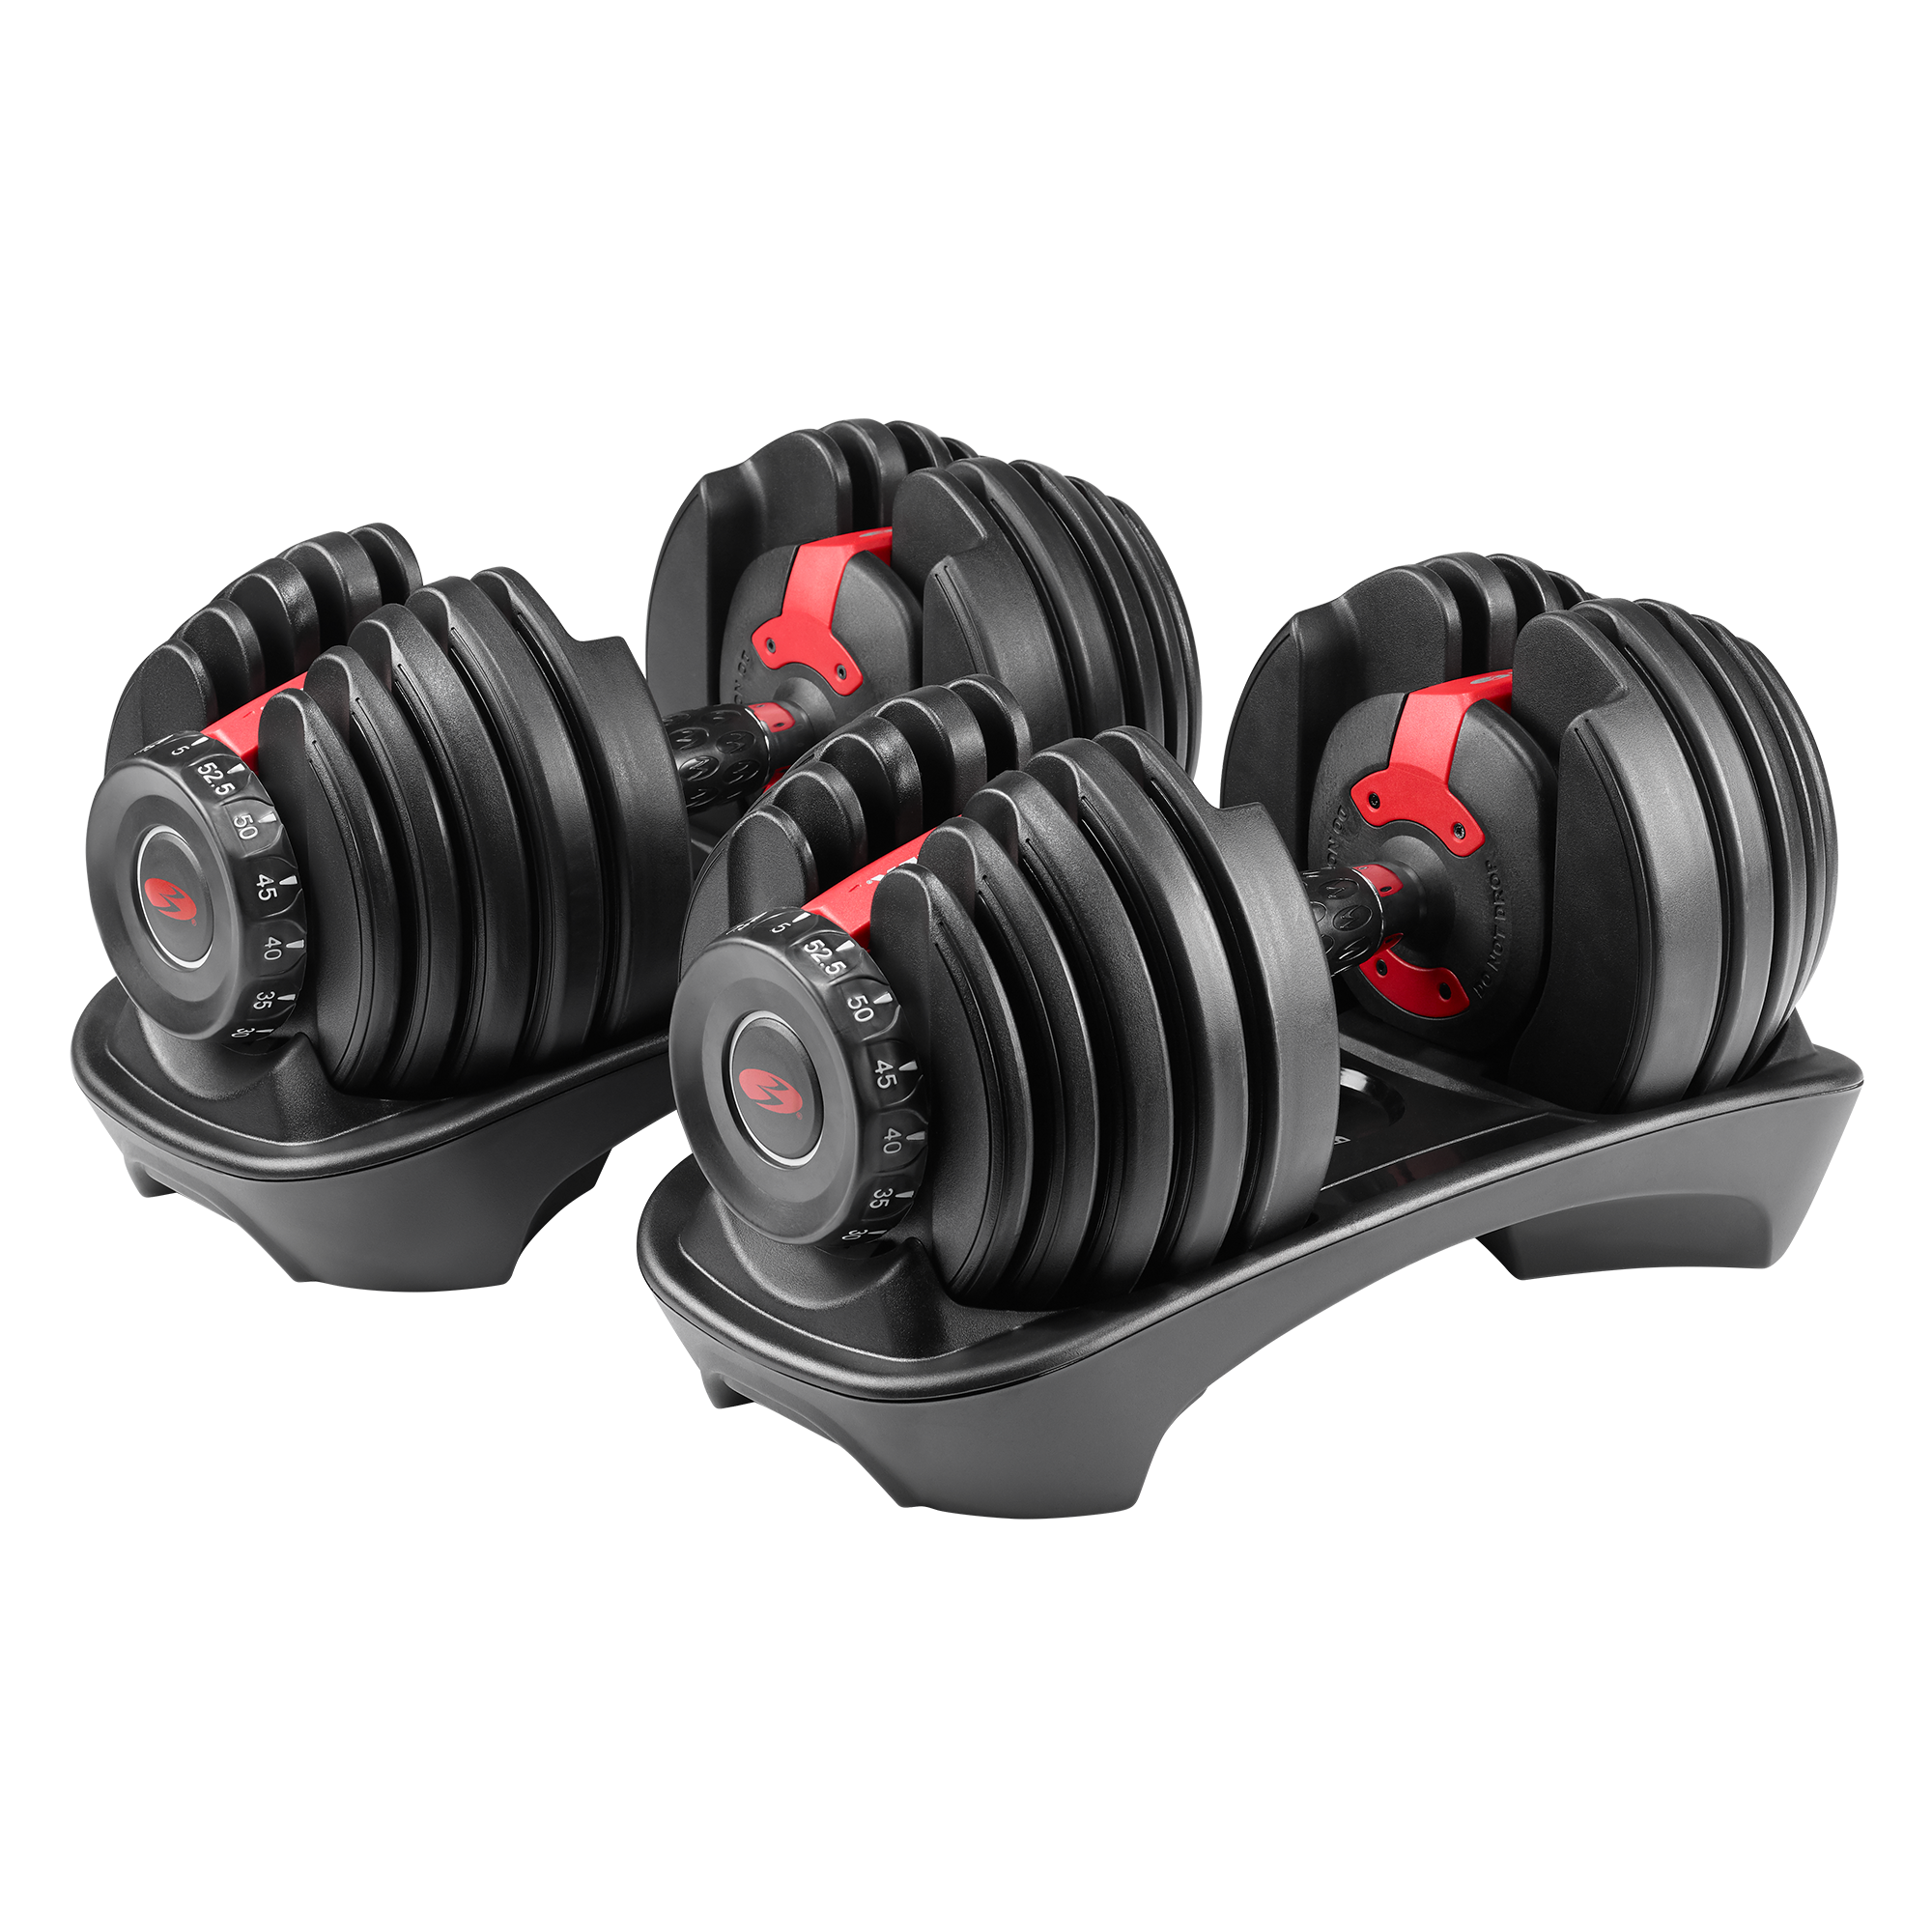 Brand New Bowflex SelectTech Adjustable Kettlebell 840 Weight 8-40lbs IN Hand 